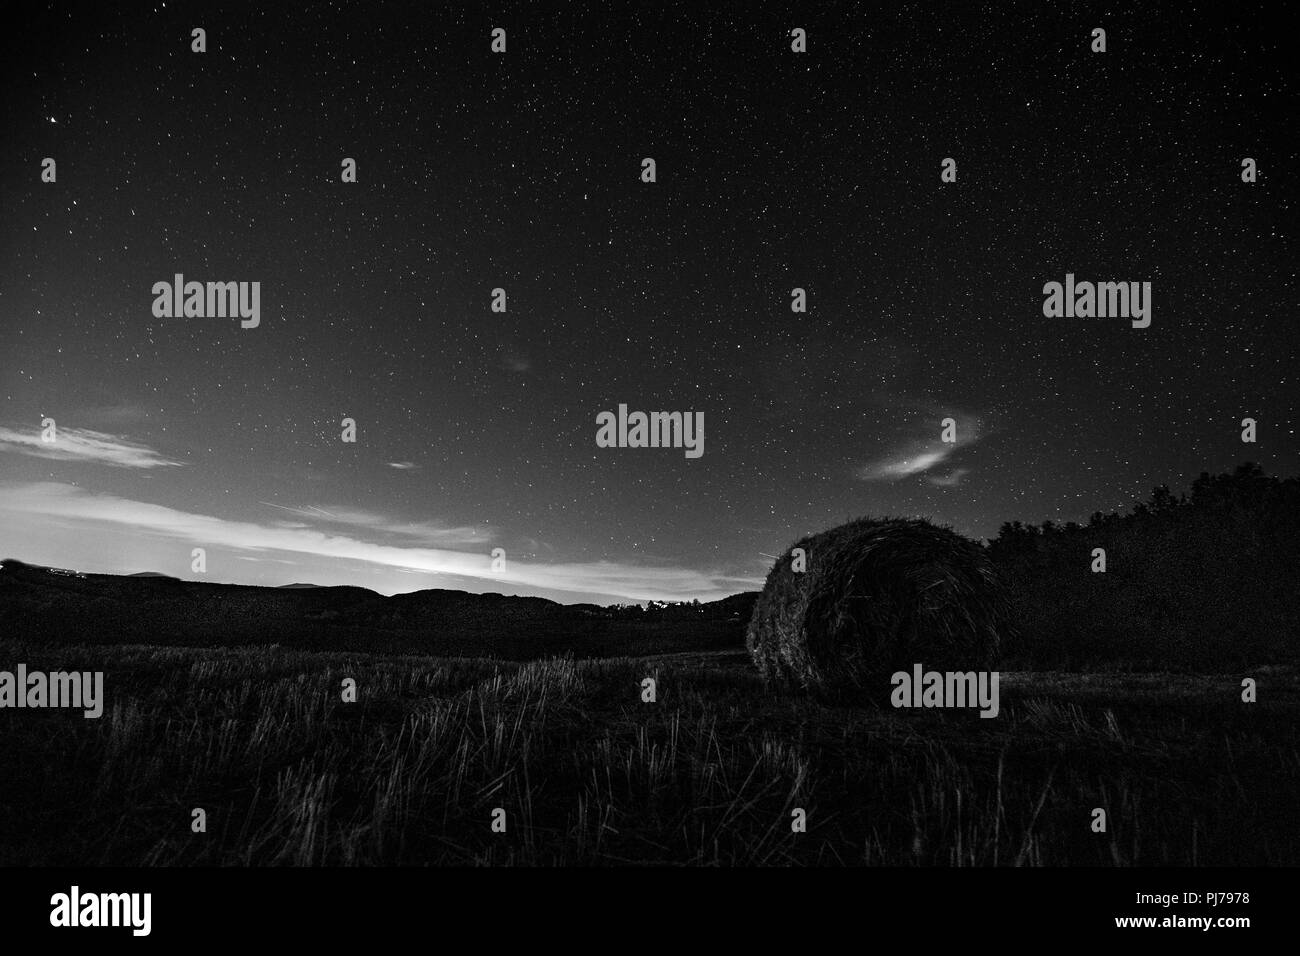 Hermosa vista del cielo nocturno estrella con nubes sobre un campo cultivado con fardos de heno Foto de stock